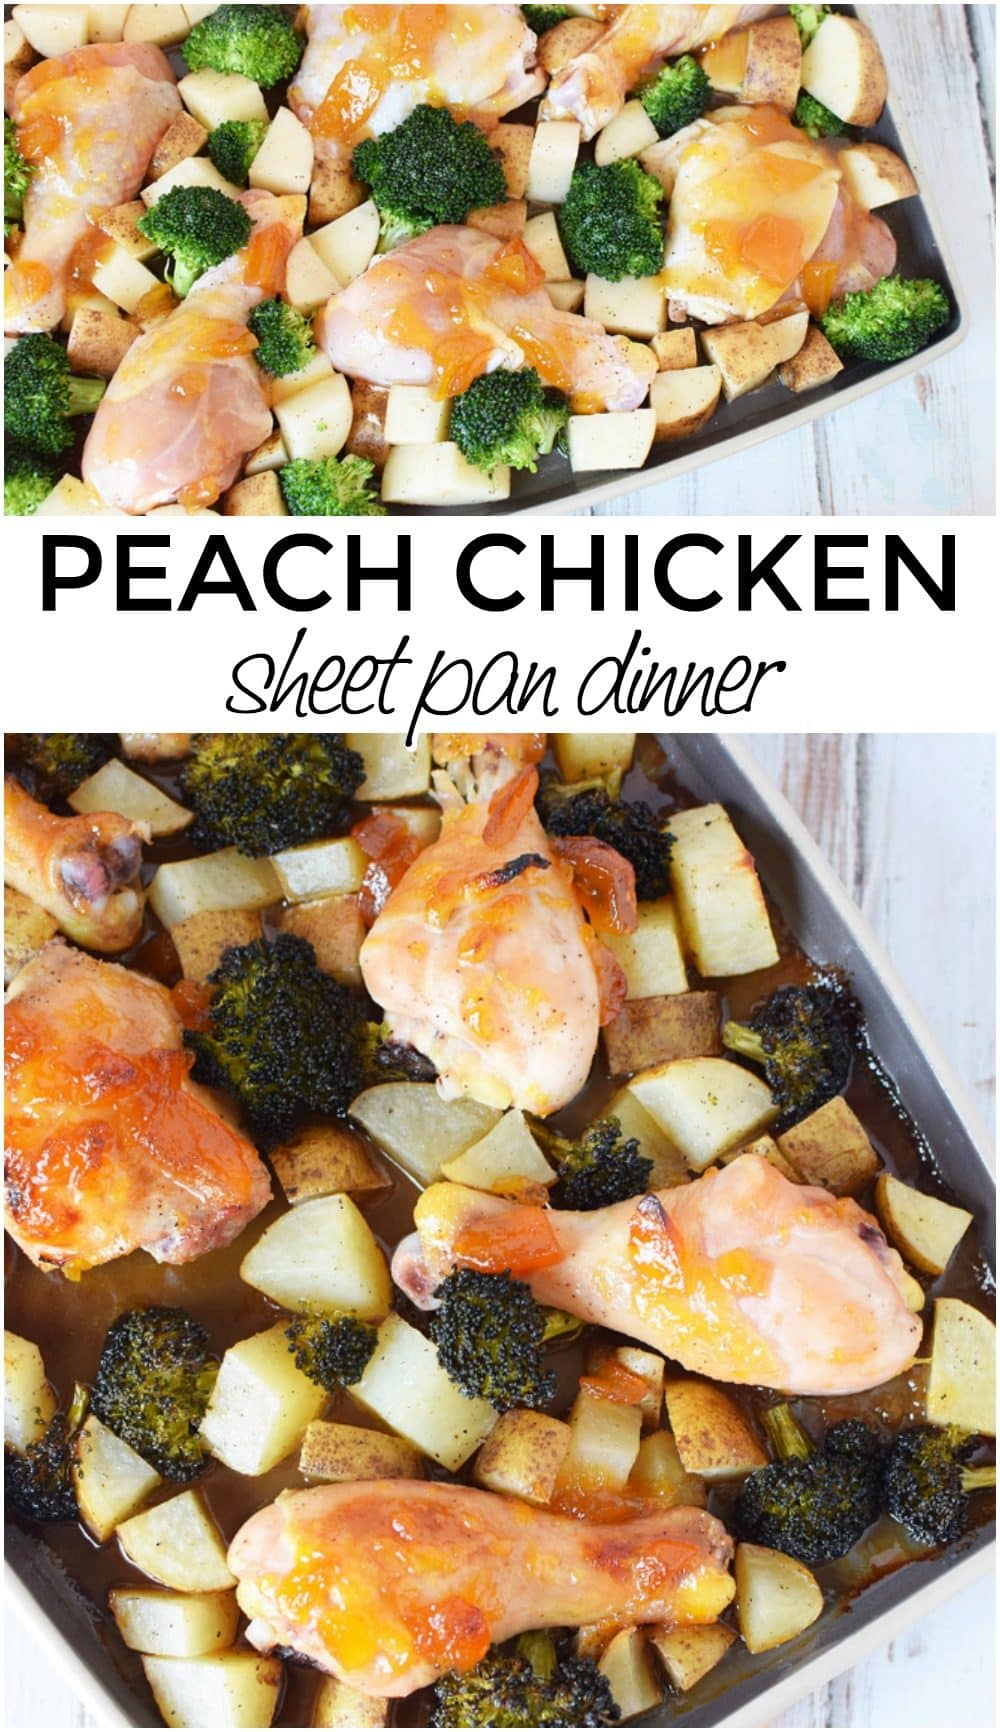 Peach chicken sheet pan dinner recipe